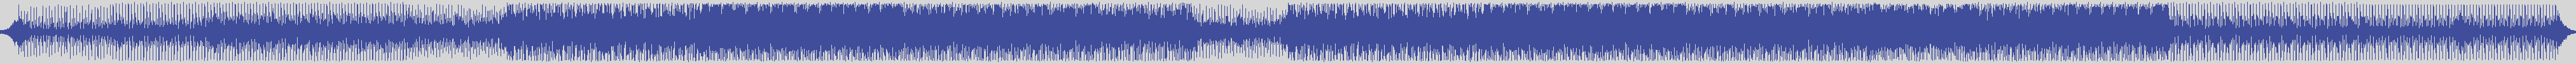 noclouds_chillout [NOC112] Pp - Rawson [Original Mix] audio wave form